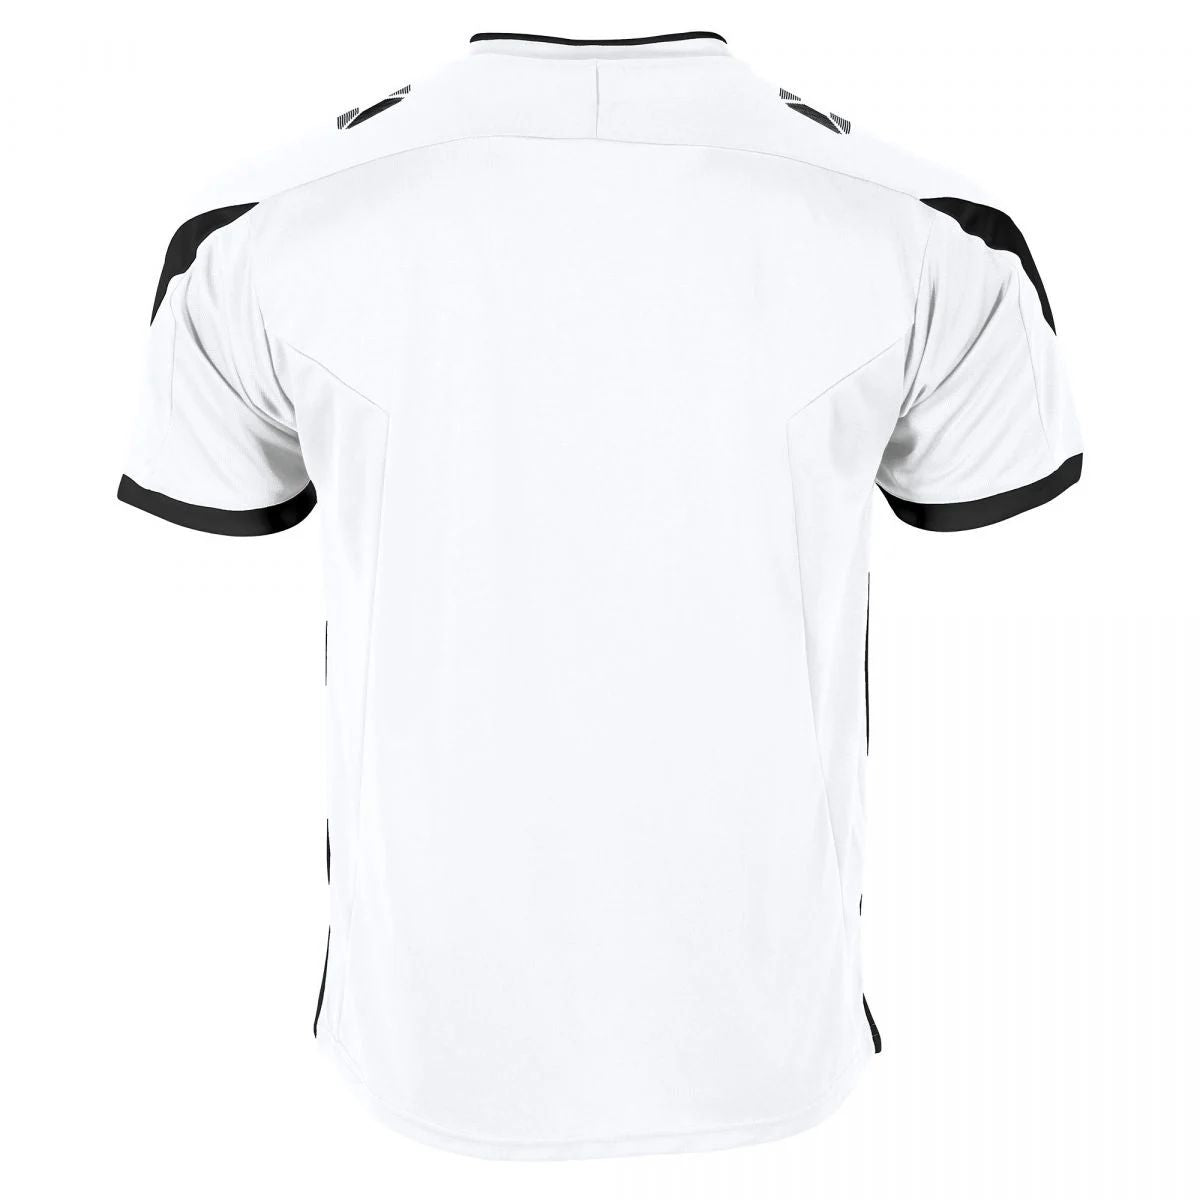 Stanno - Drive Shirt- White & Black